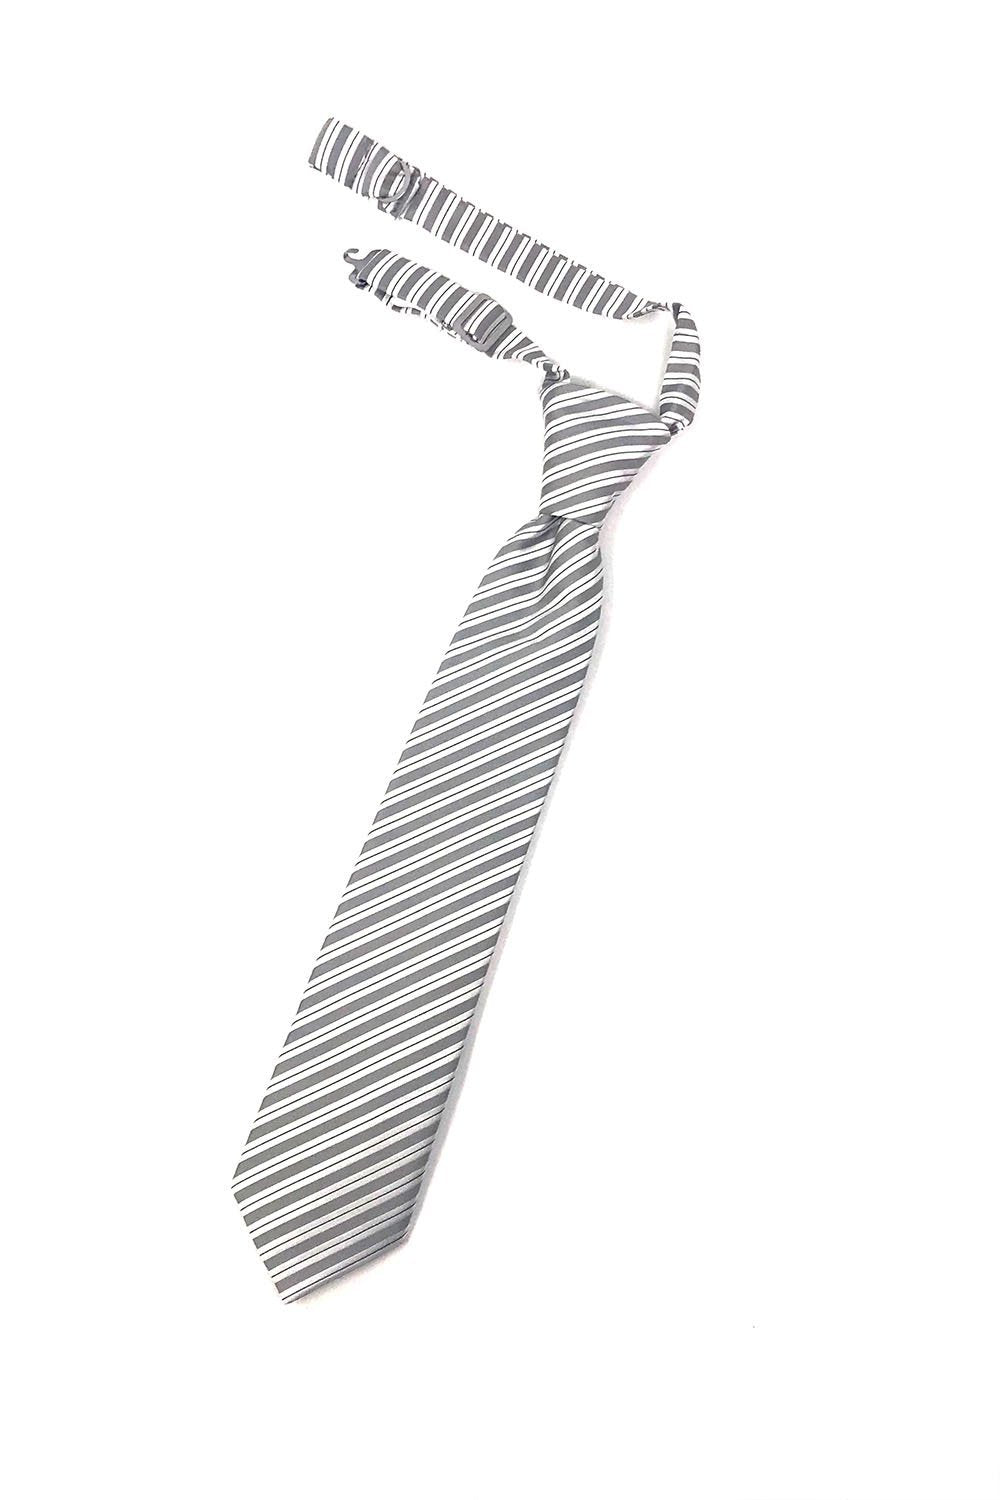 Cardi Grey Newton Stripe Kids Necktie